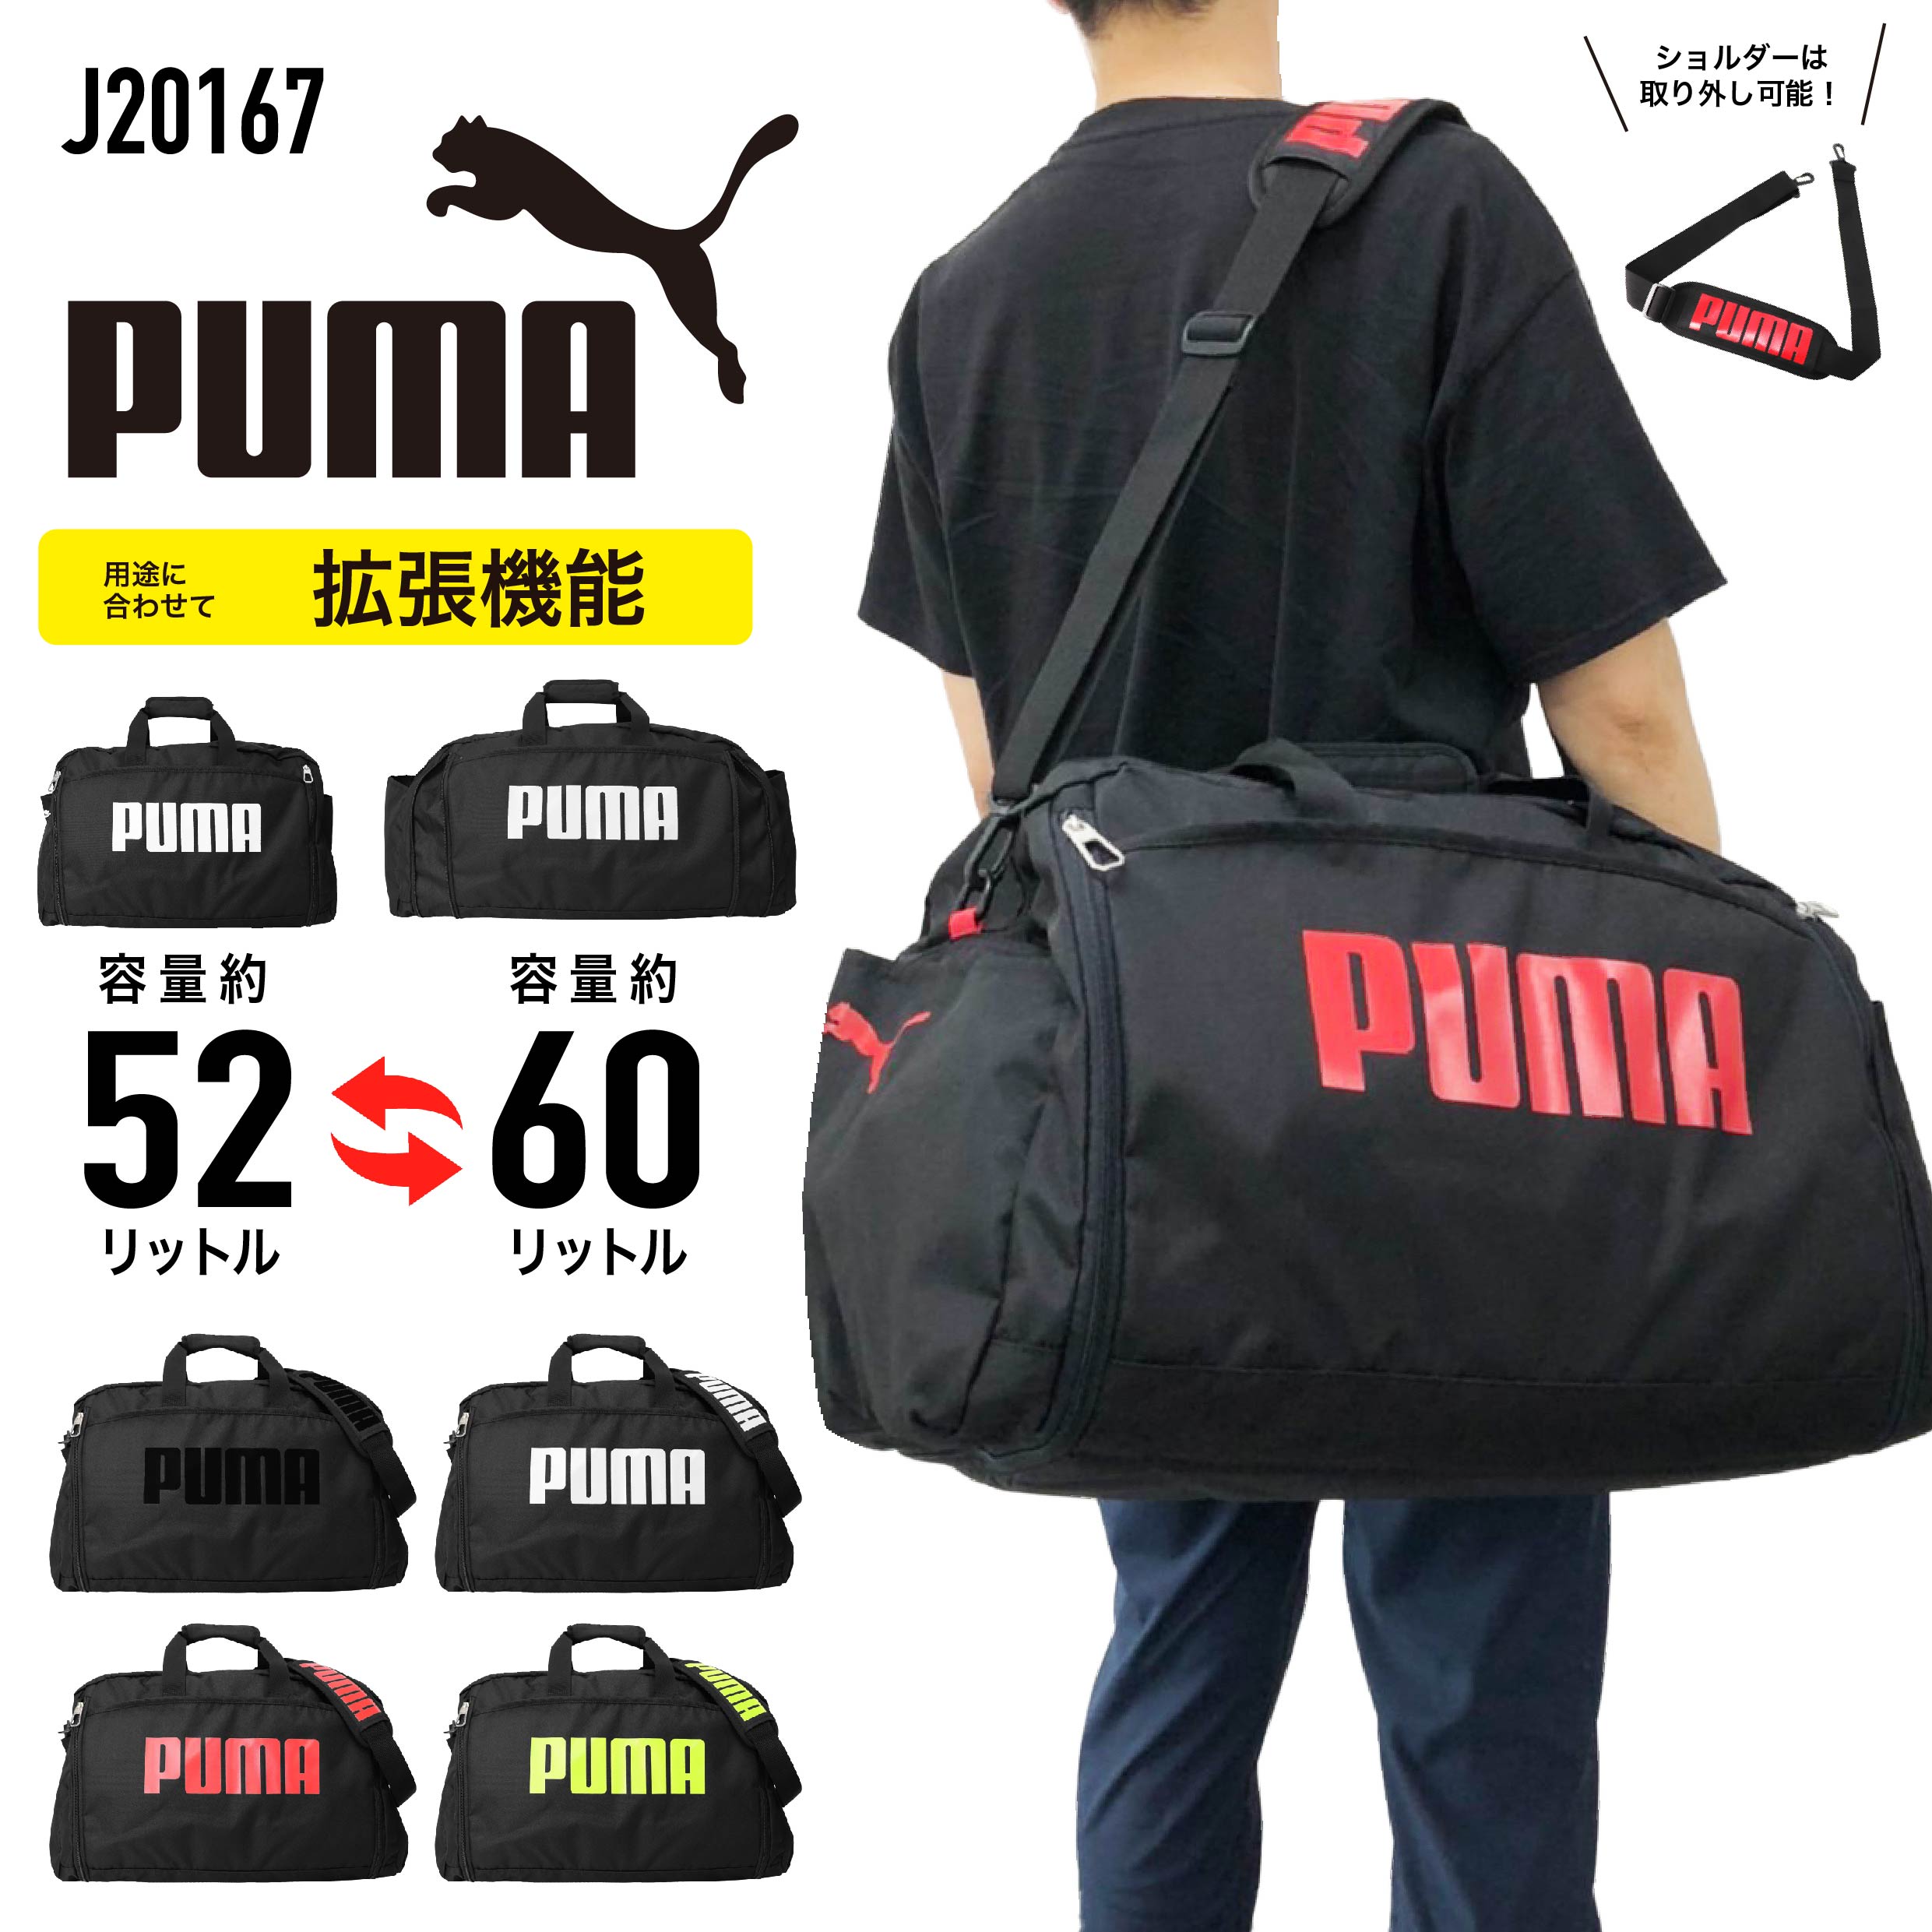 【楽天市場】【あす楽】PUMA プーマ ボストンバッグ 2WAY 